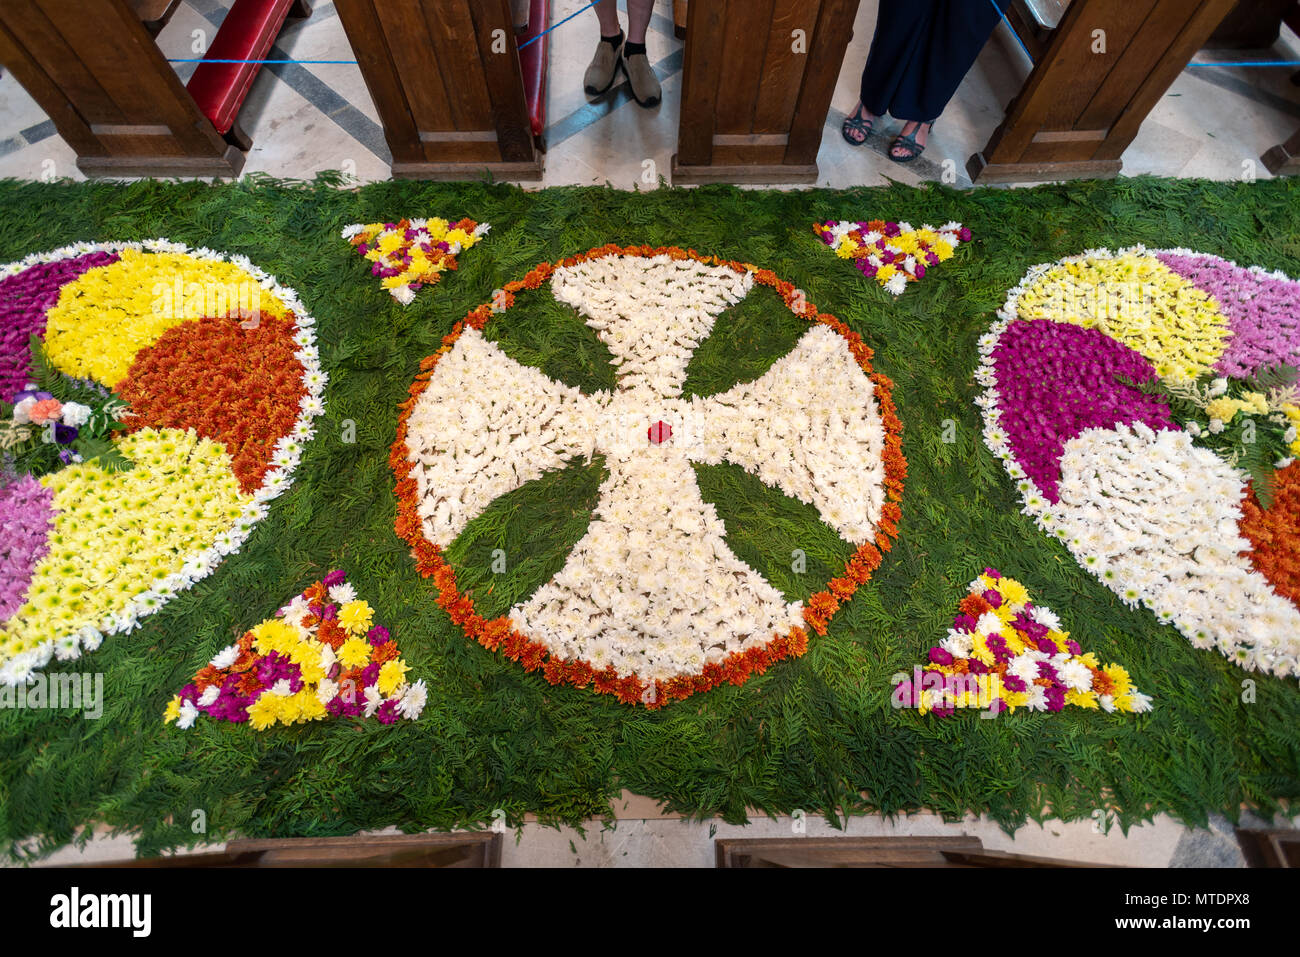 Un tapis de fleurs dans l'allée centrale d'Arundel Cathedral in Arundel, West Sussex, UK. Chaque année une fête des fleurs est tenue à la cathédrale pour célébrer la fête de Corpus Christi. Banque D'Images